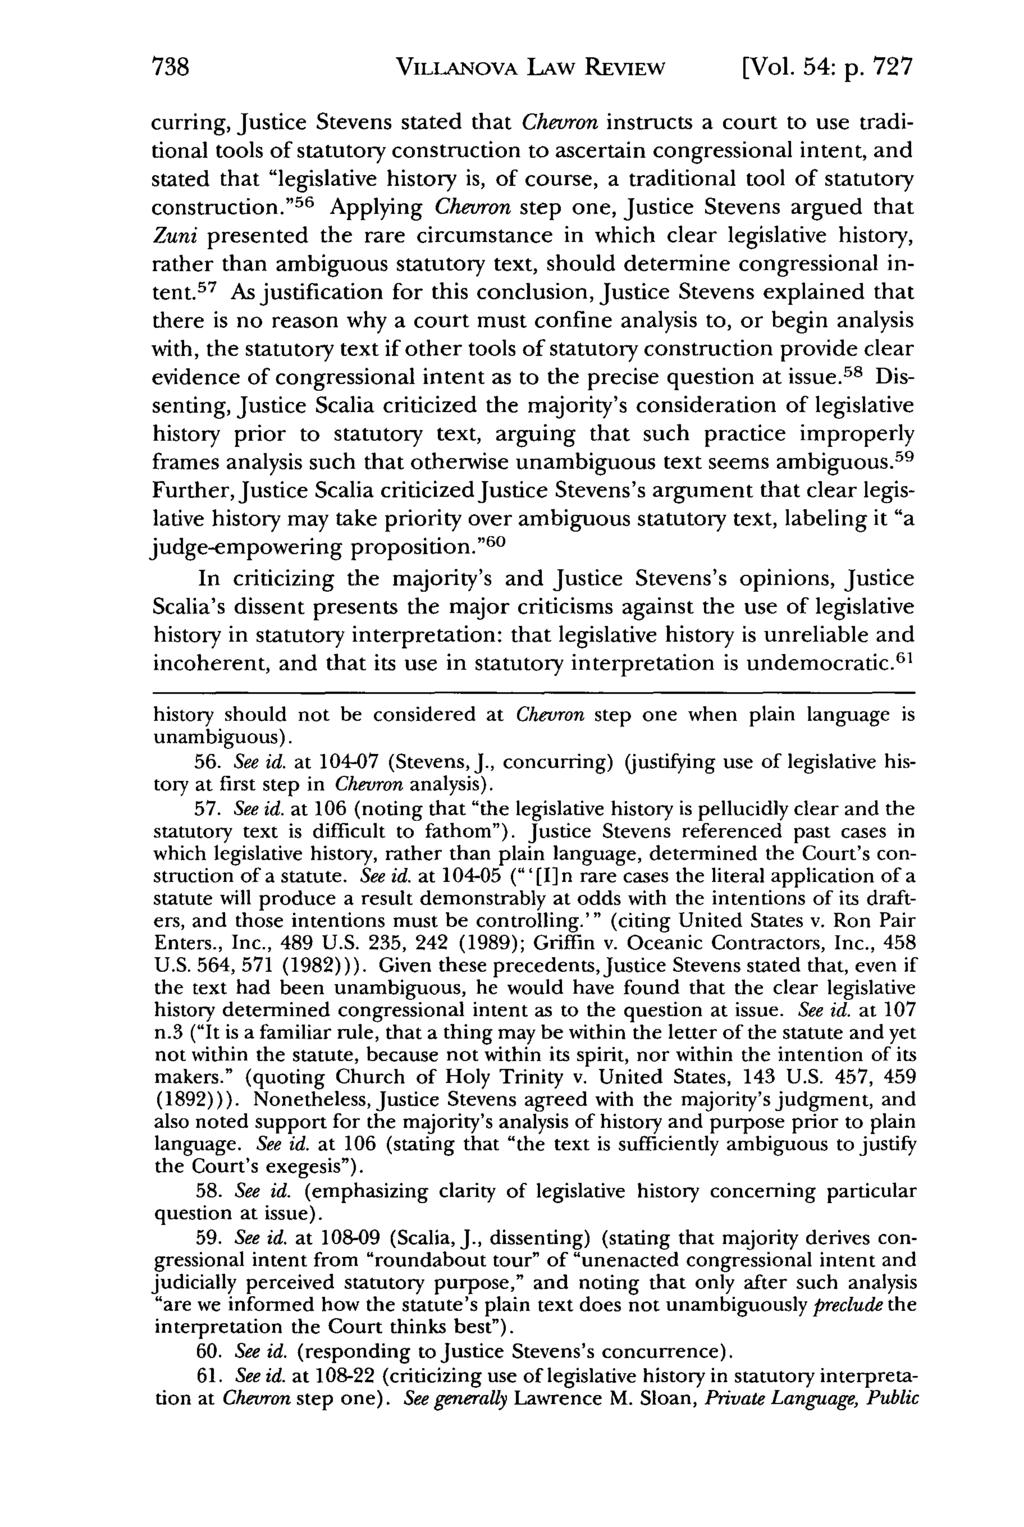 Villanova Law Review, Vol. 54, Iss. 5 [2009], Art. 2 VILLANOVA LAW REVIEW [Vol. 54: p.